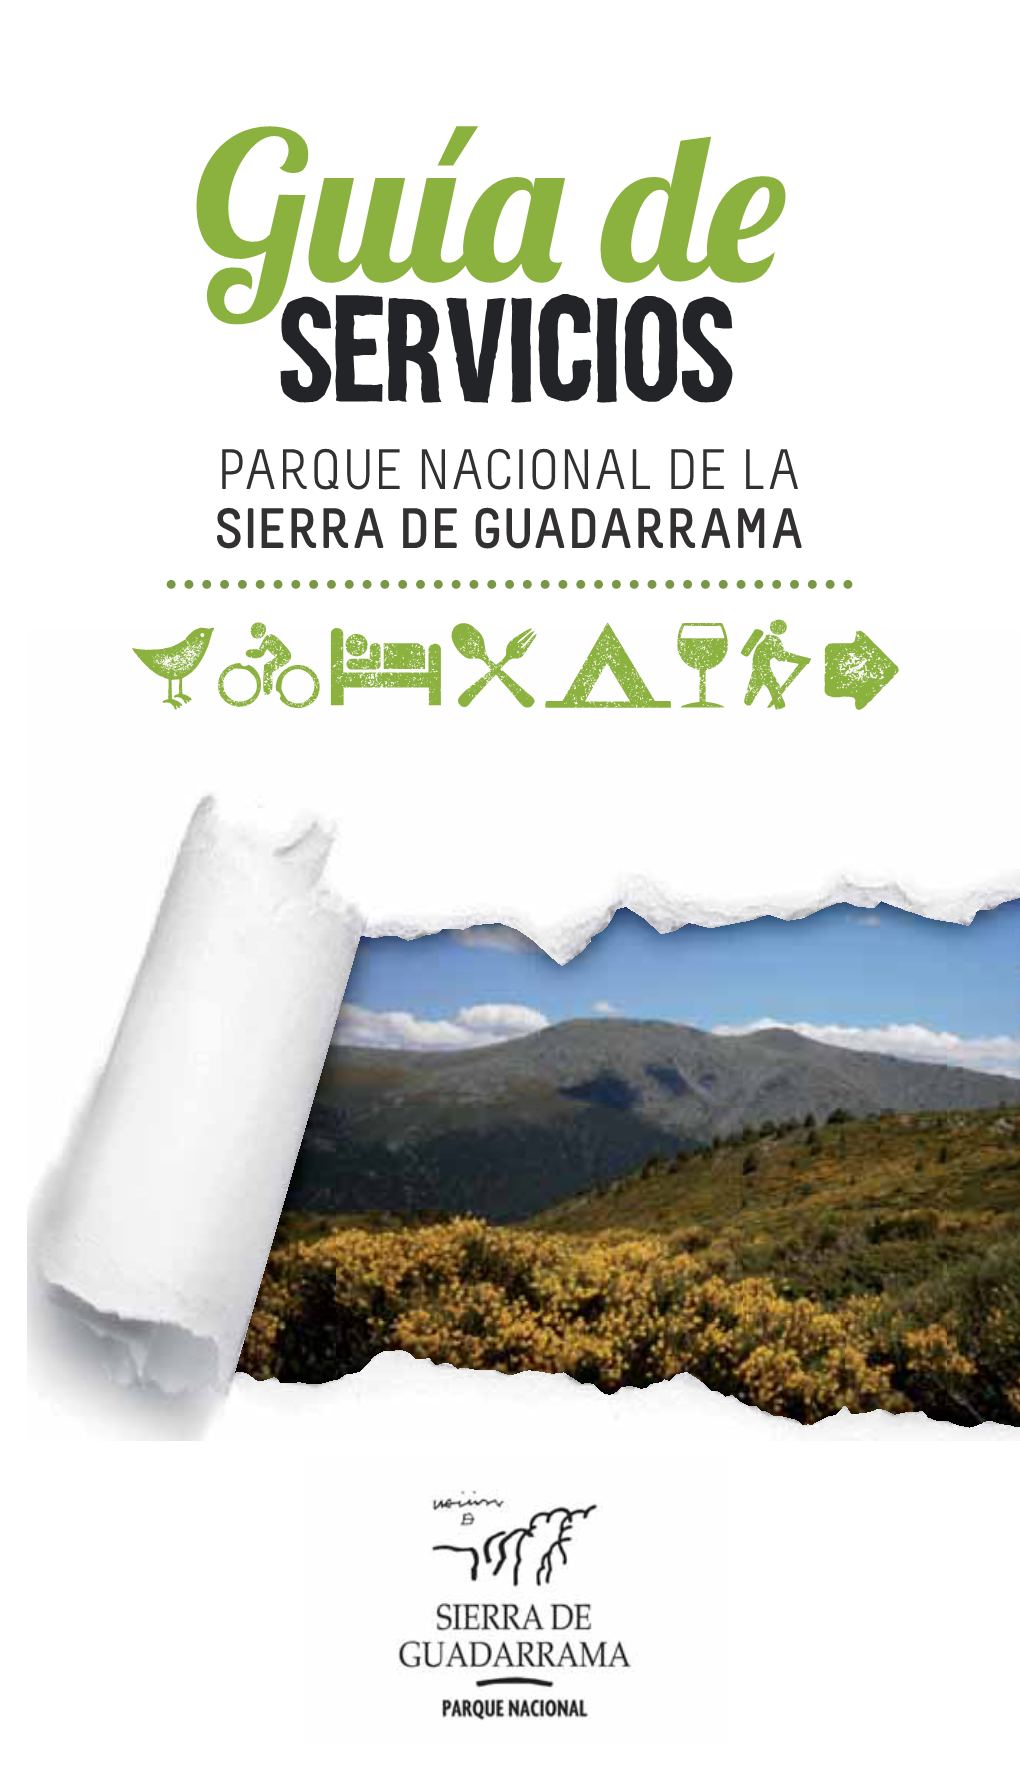 GUIA COMPLETA.Indd 1 08/05/2014 10:47:39 © Comunidad De Madrid Consejería De Medio Ambiente Y Ordenación Del Territorio Reservados Todos Los Derechos